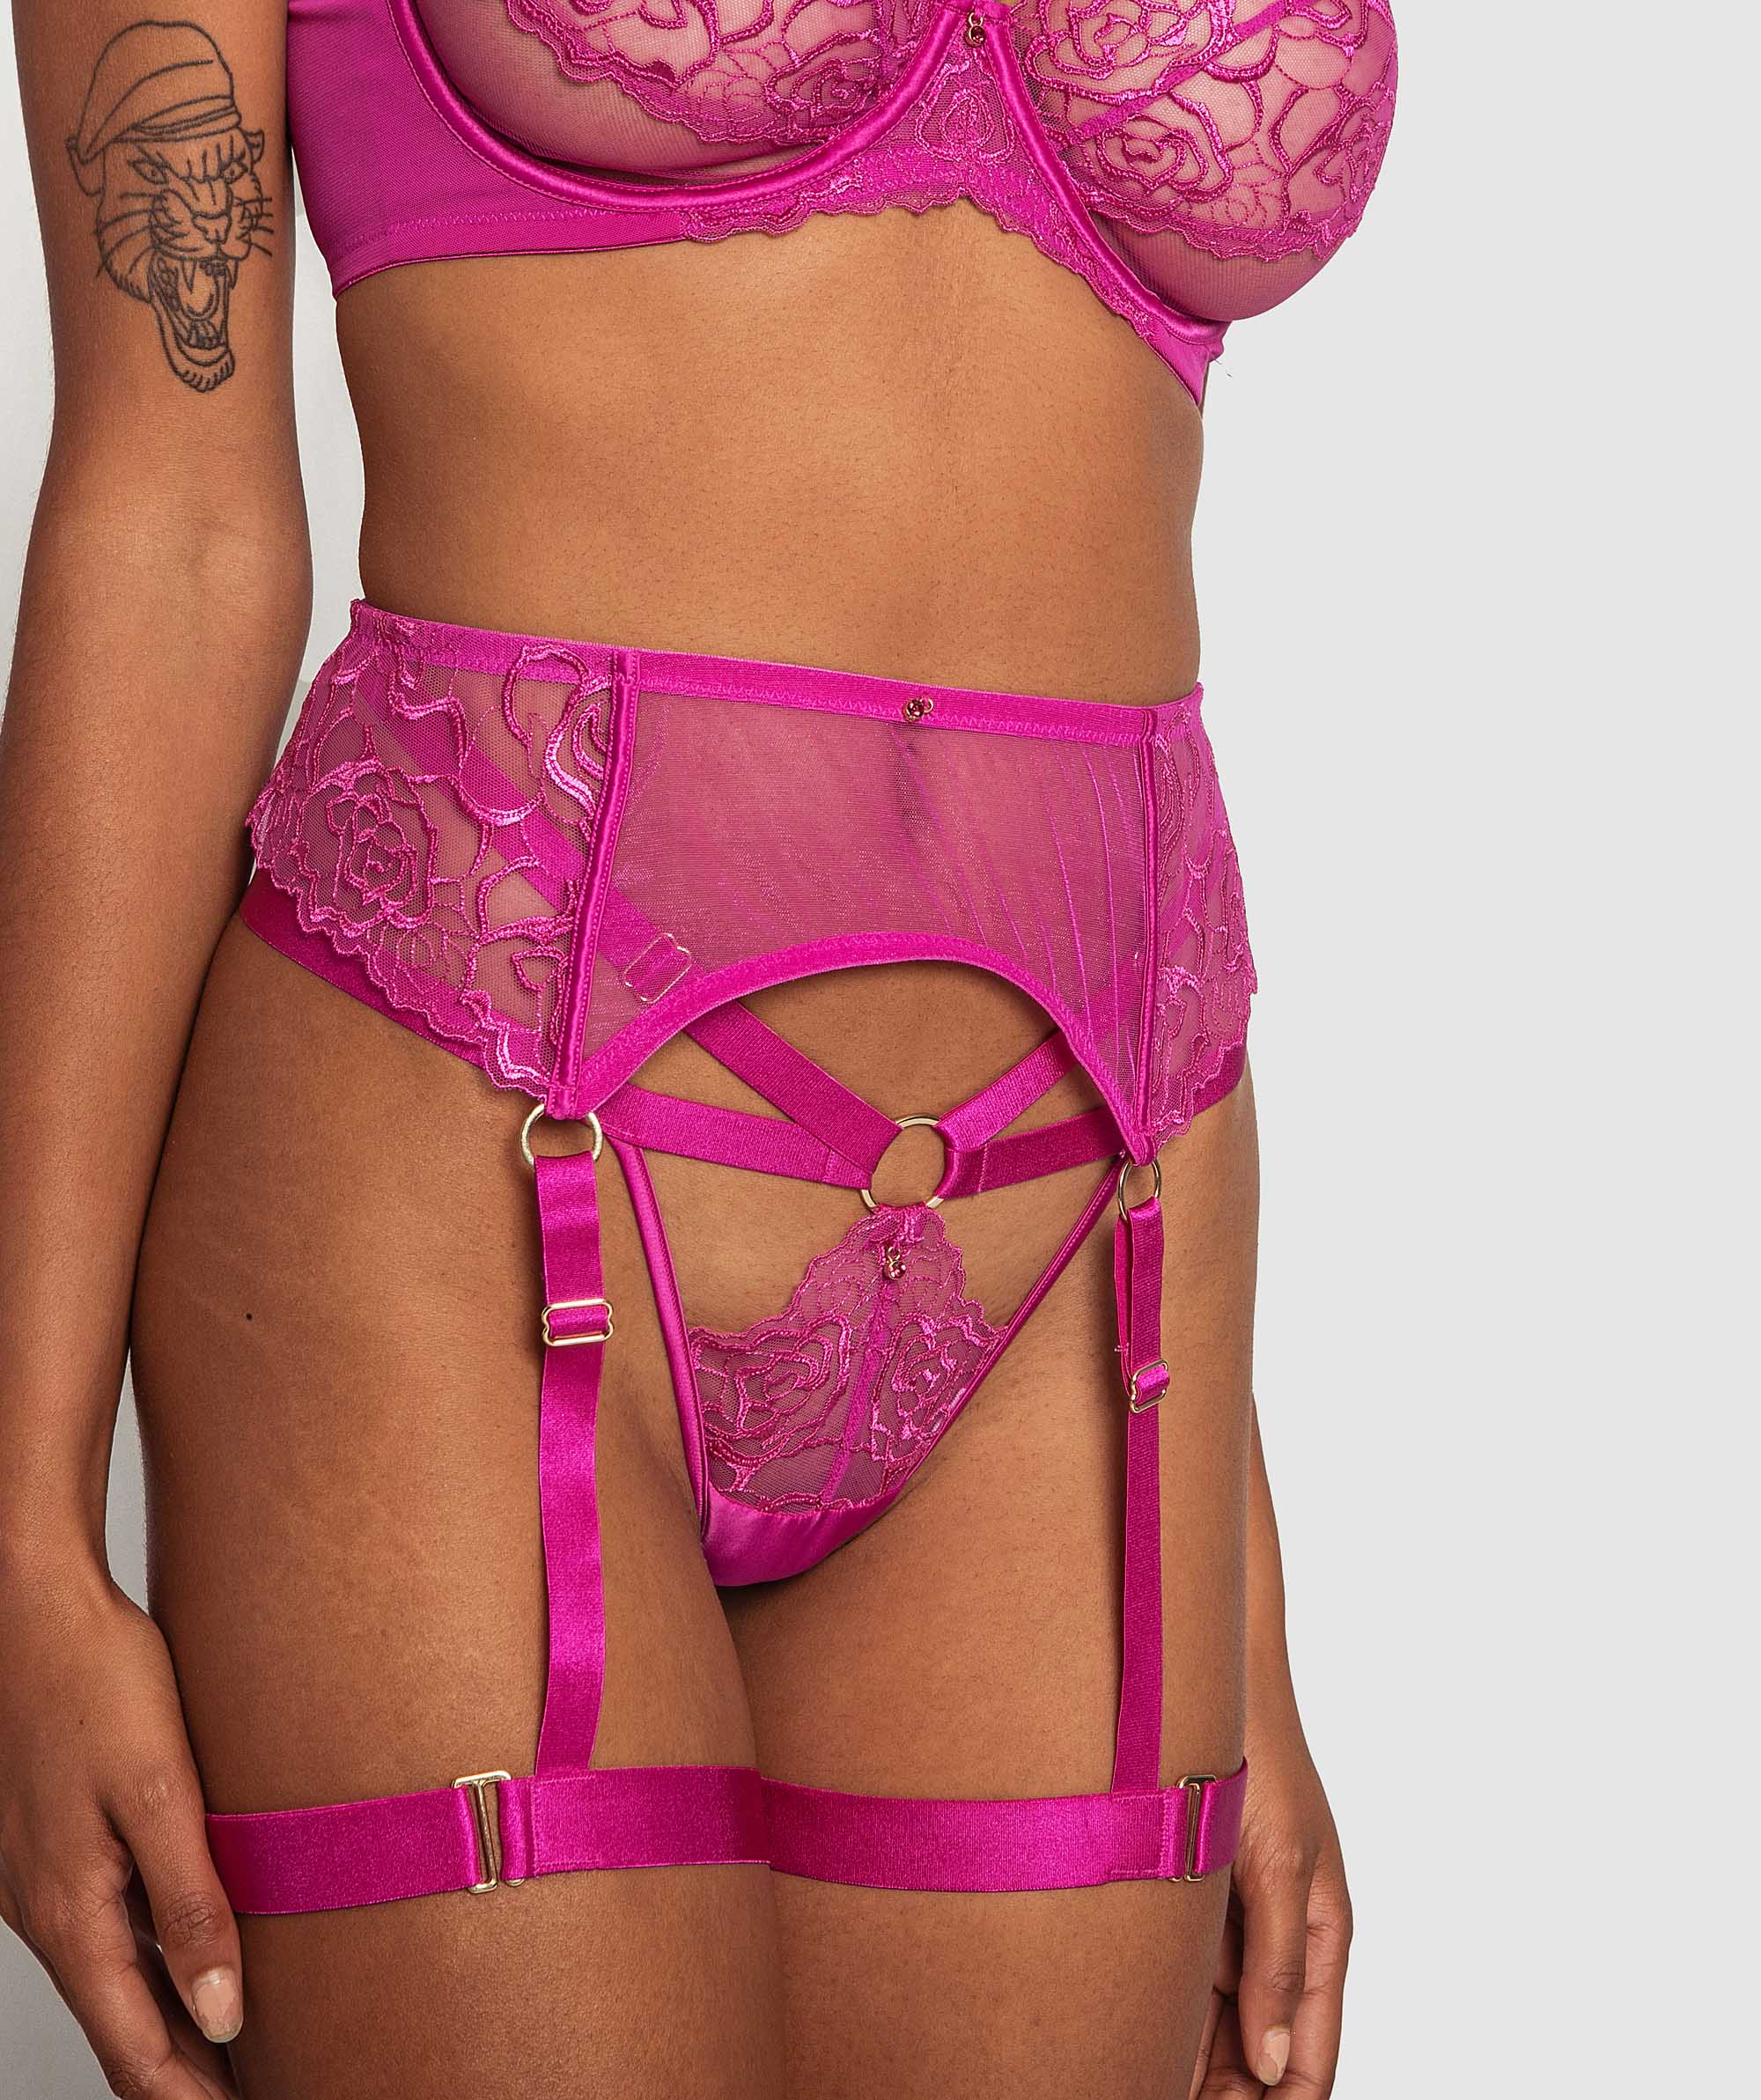 Night Games Curvalicious Suspender - Fuchsia Pink